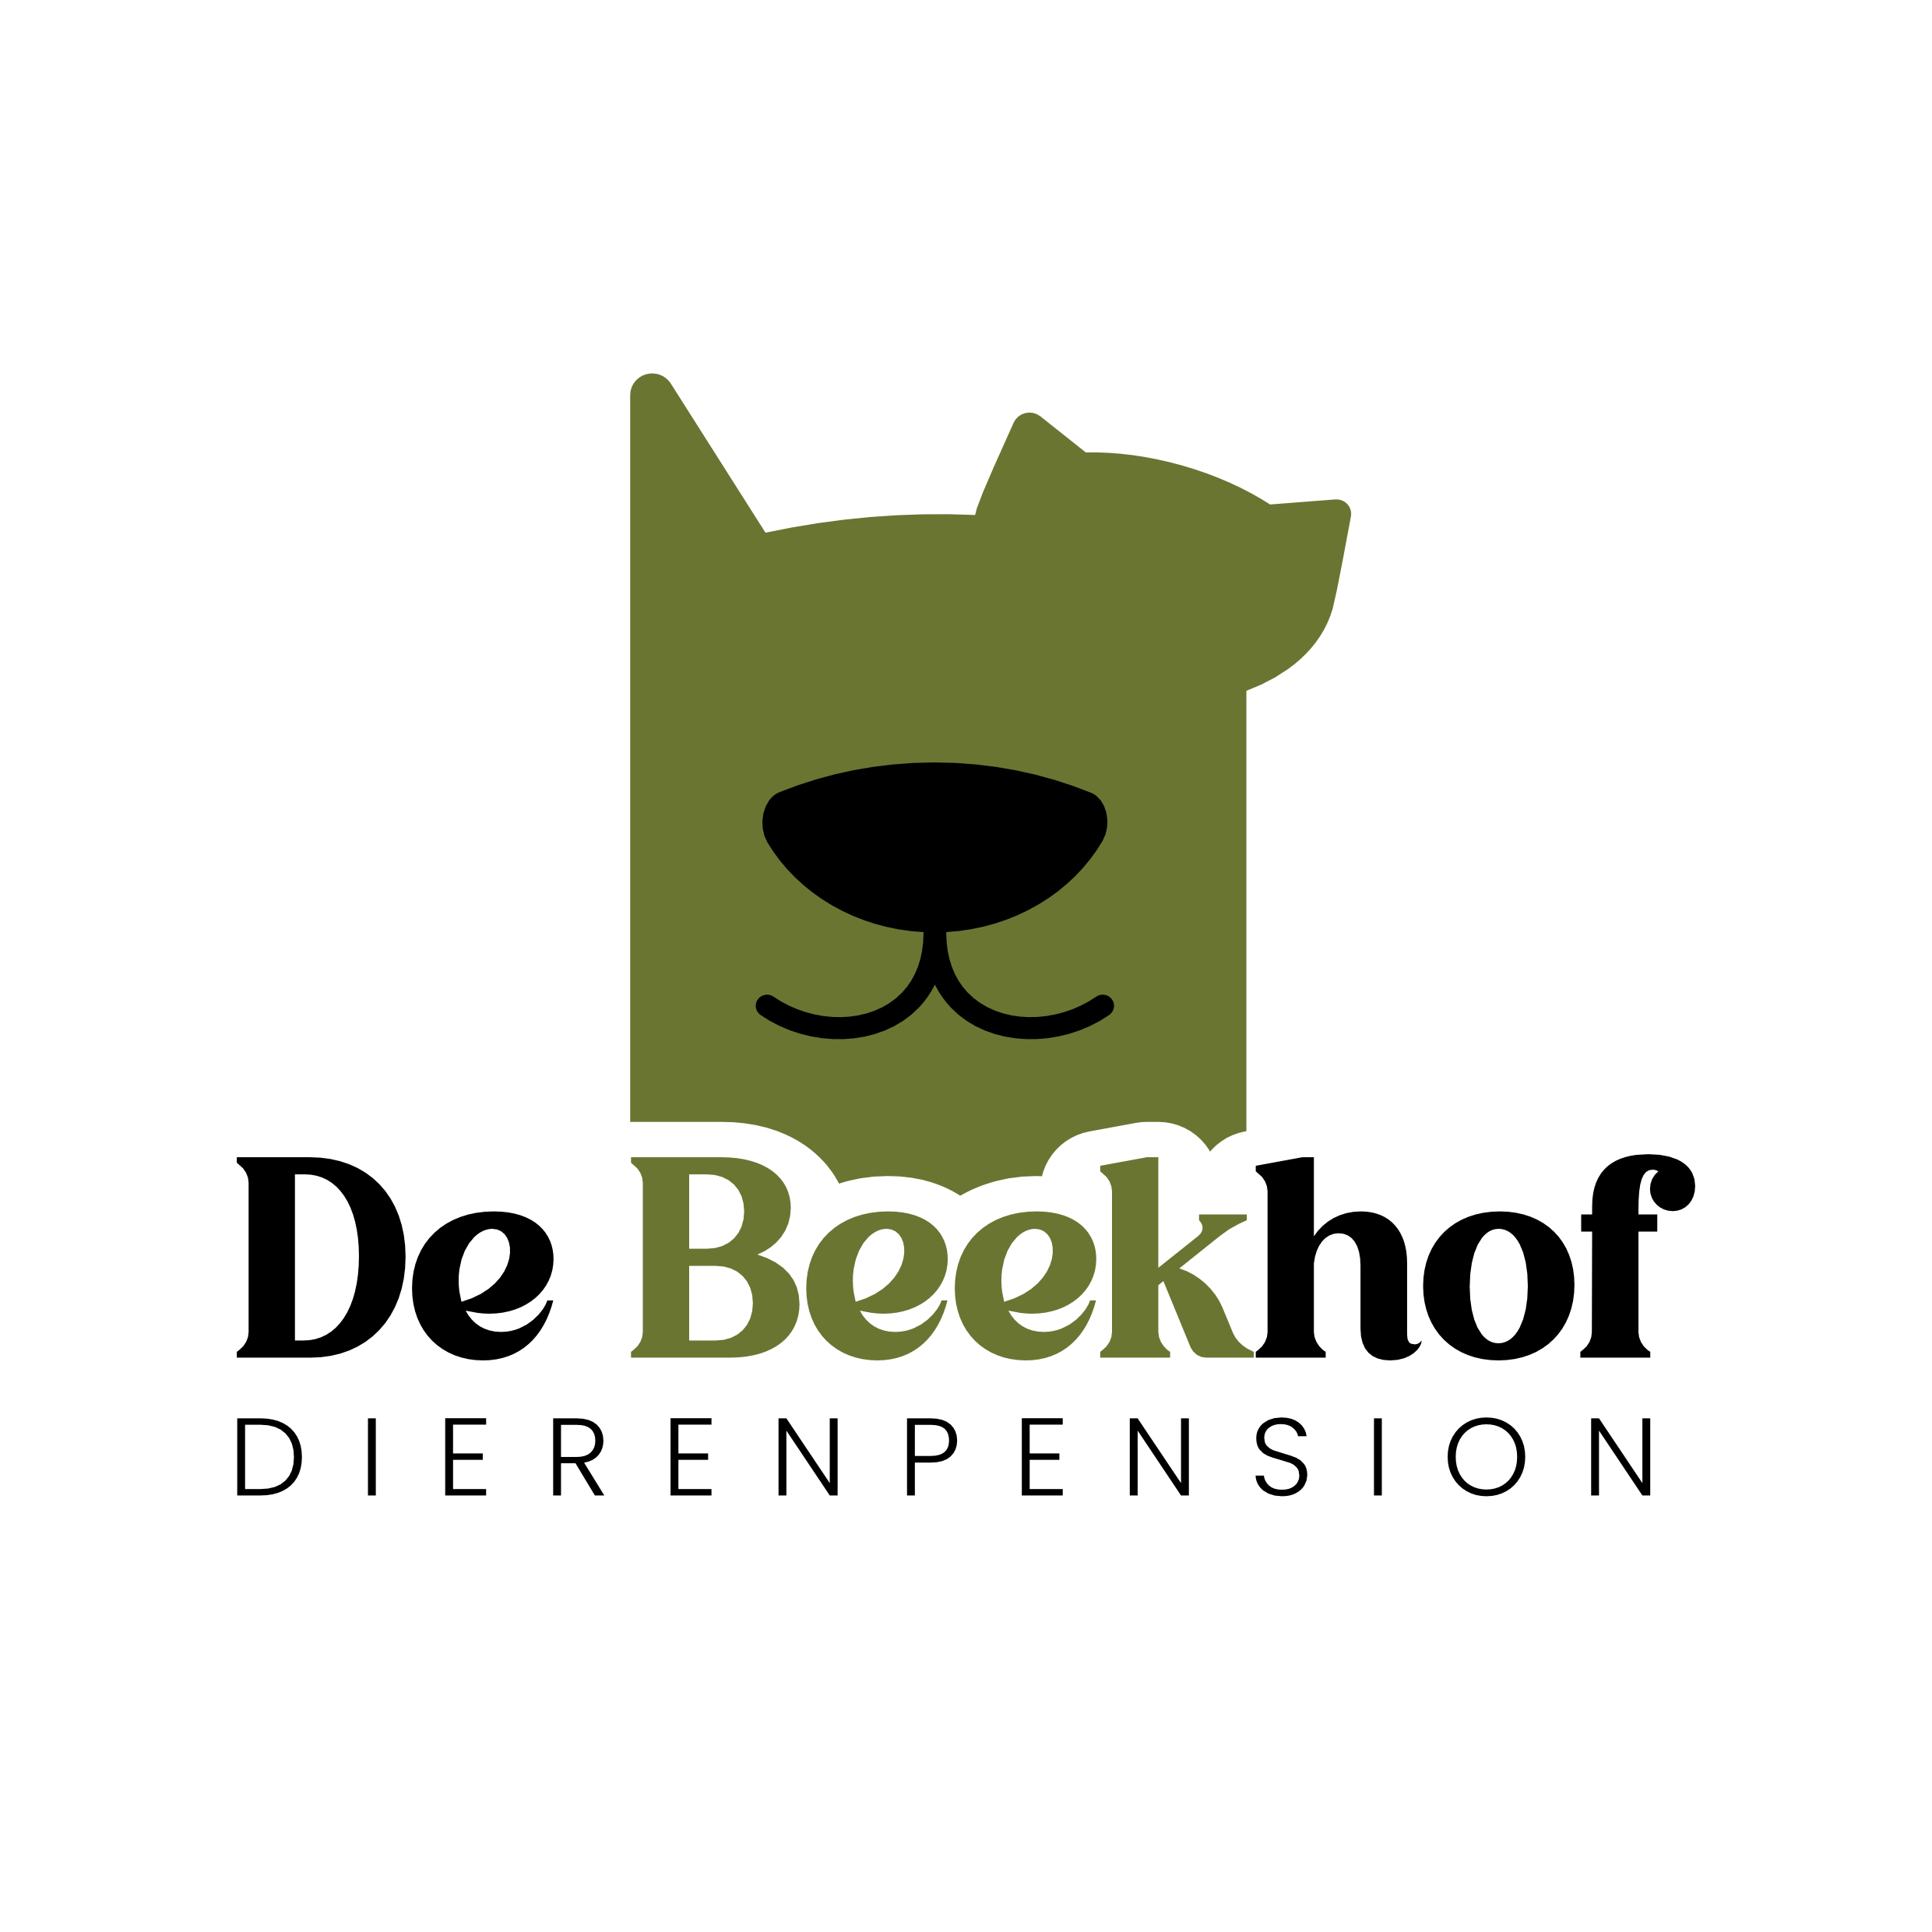 Dierenpension De Beekhof Apeldoorn